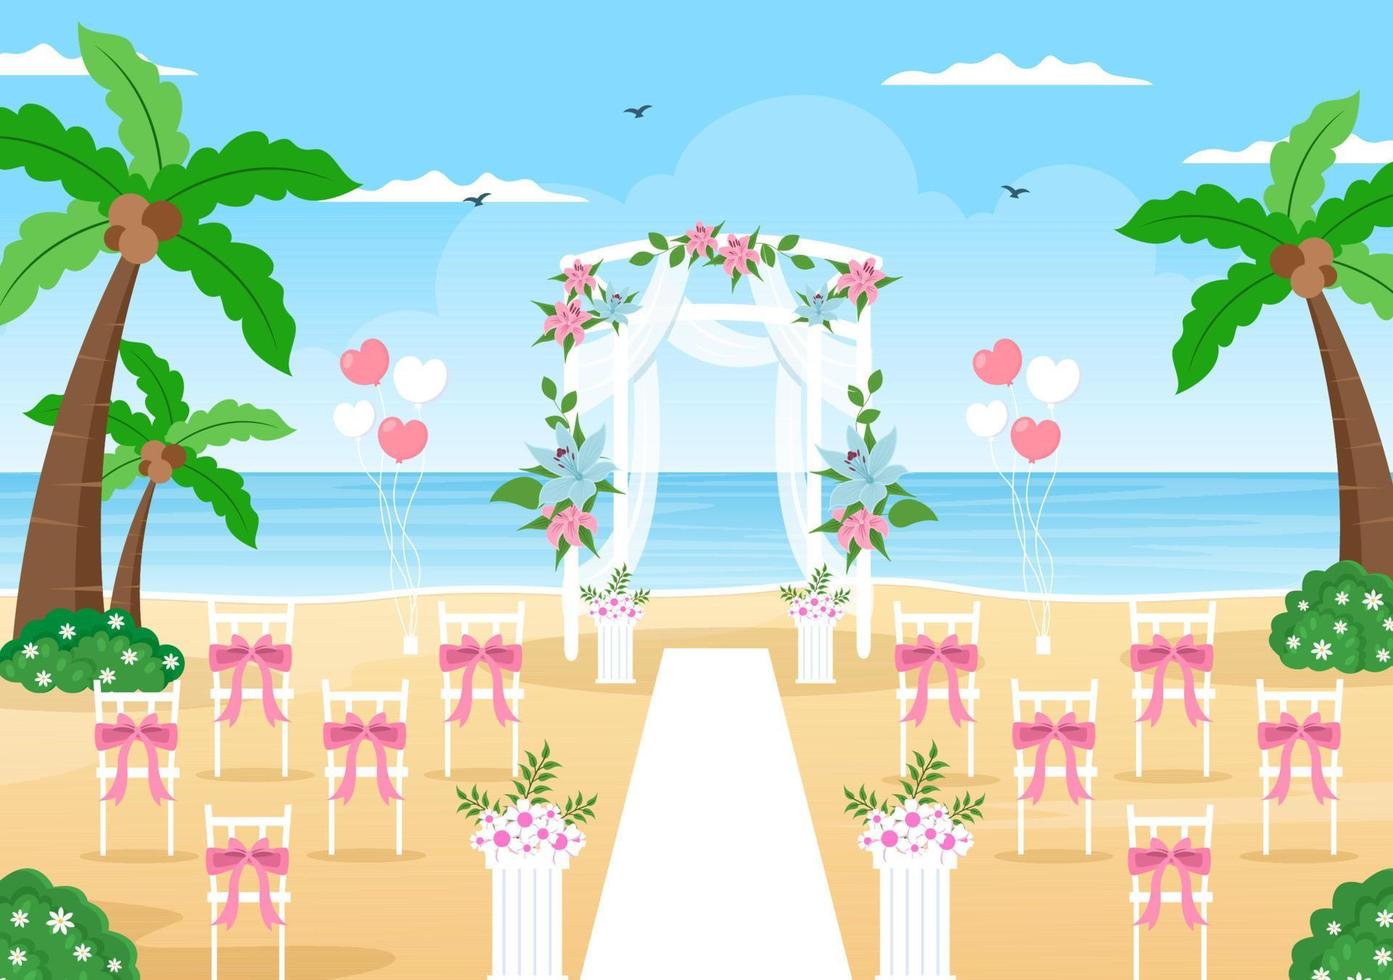 organisateur de mariage fournissant un service de décoration ou faisant des plans avant la cérémonie de mariage en illustration de style dessin animé à fond plat vecteur